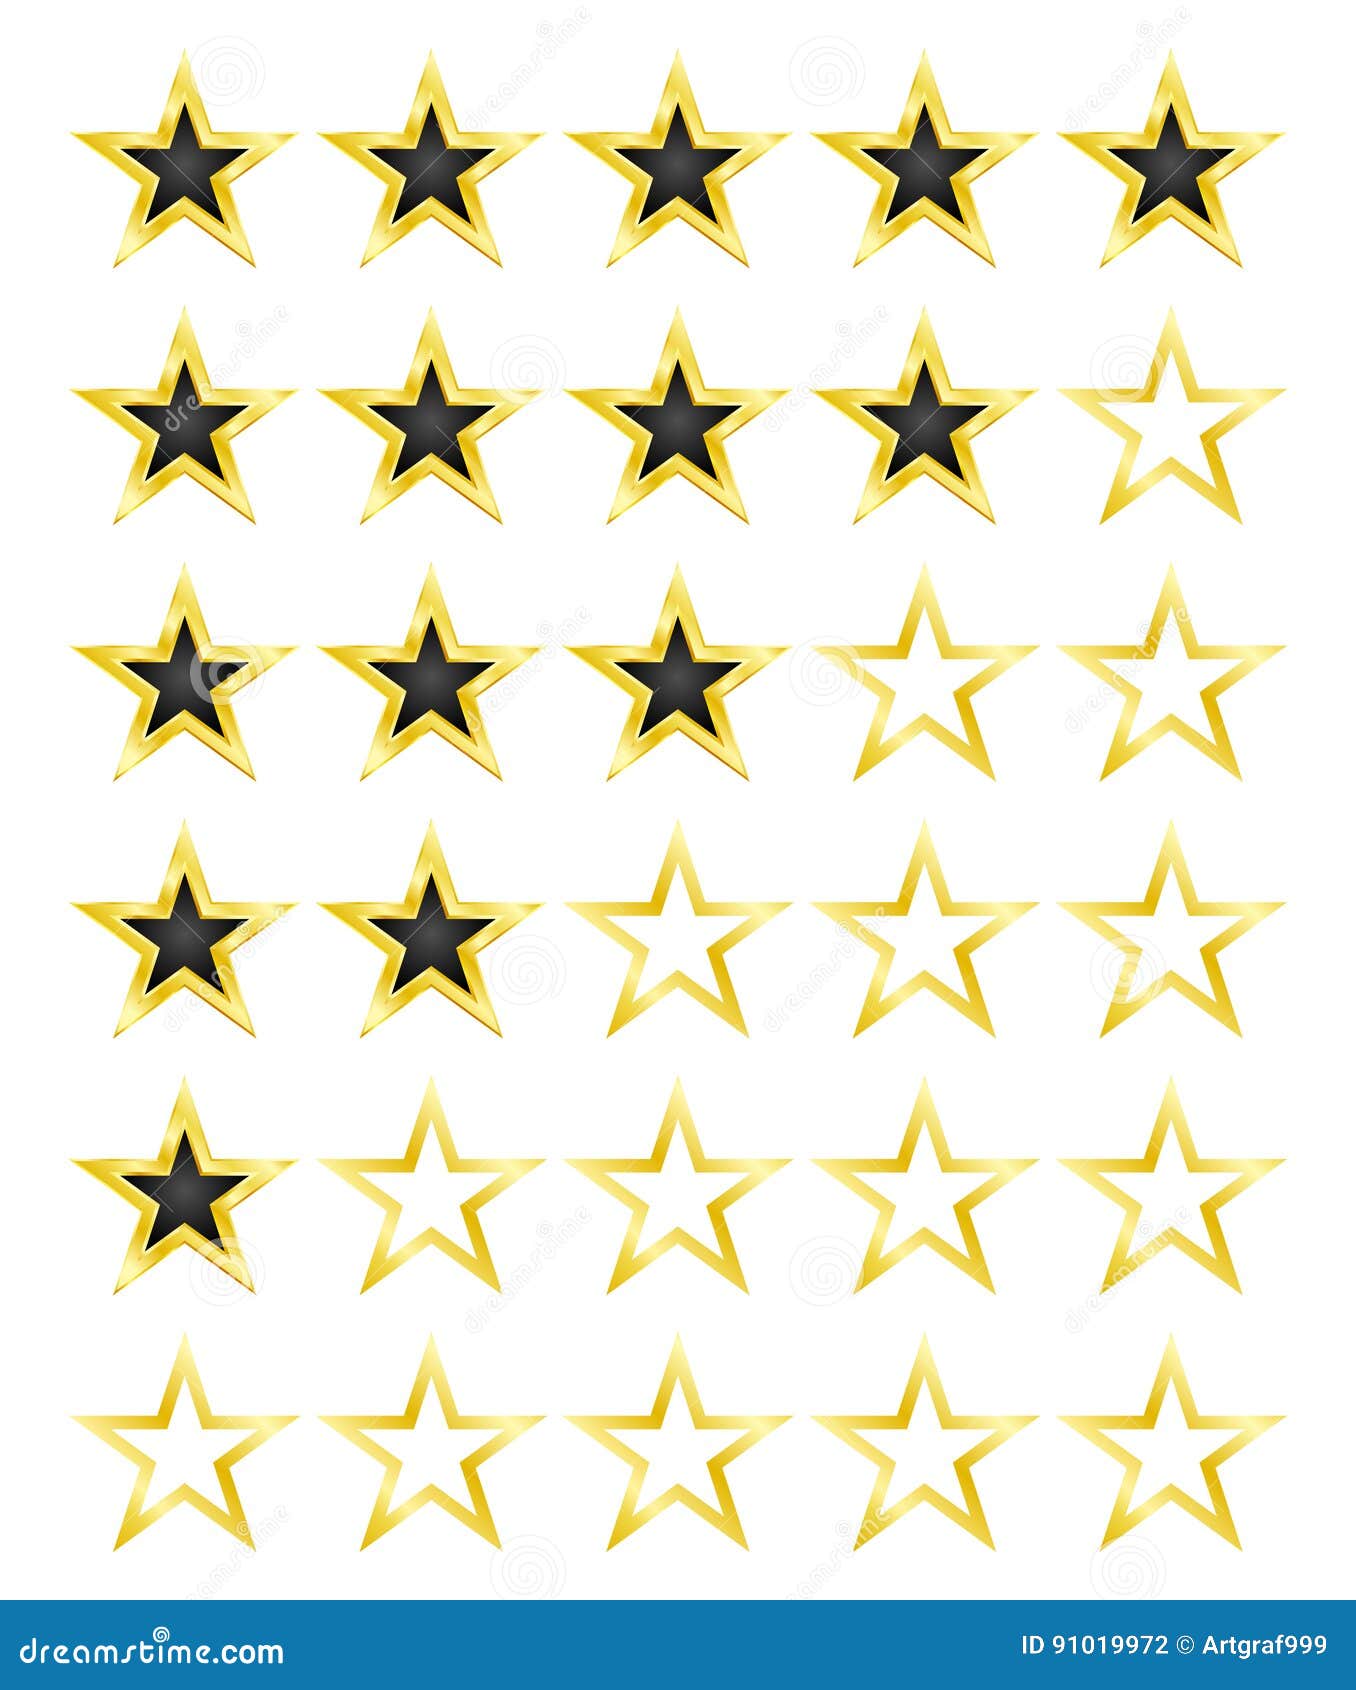 Star Rating For 0 5 Stars Best Rating Vector Illustration Stock